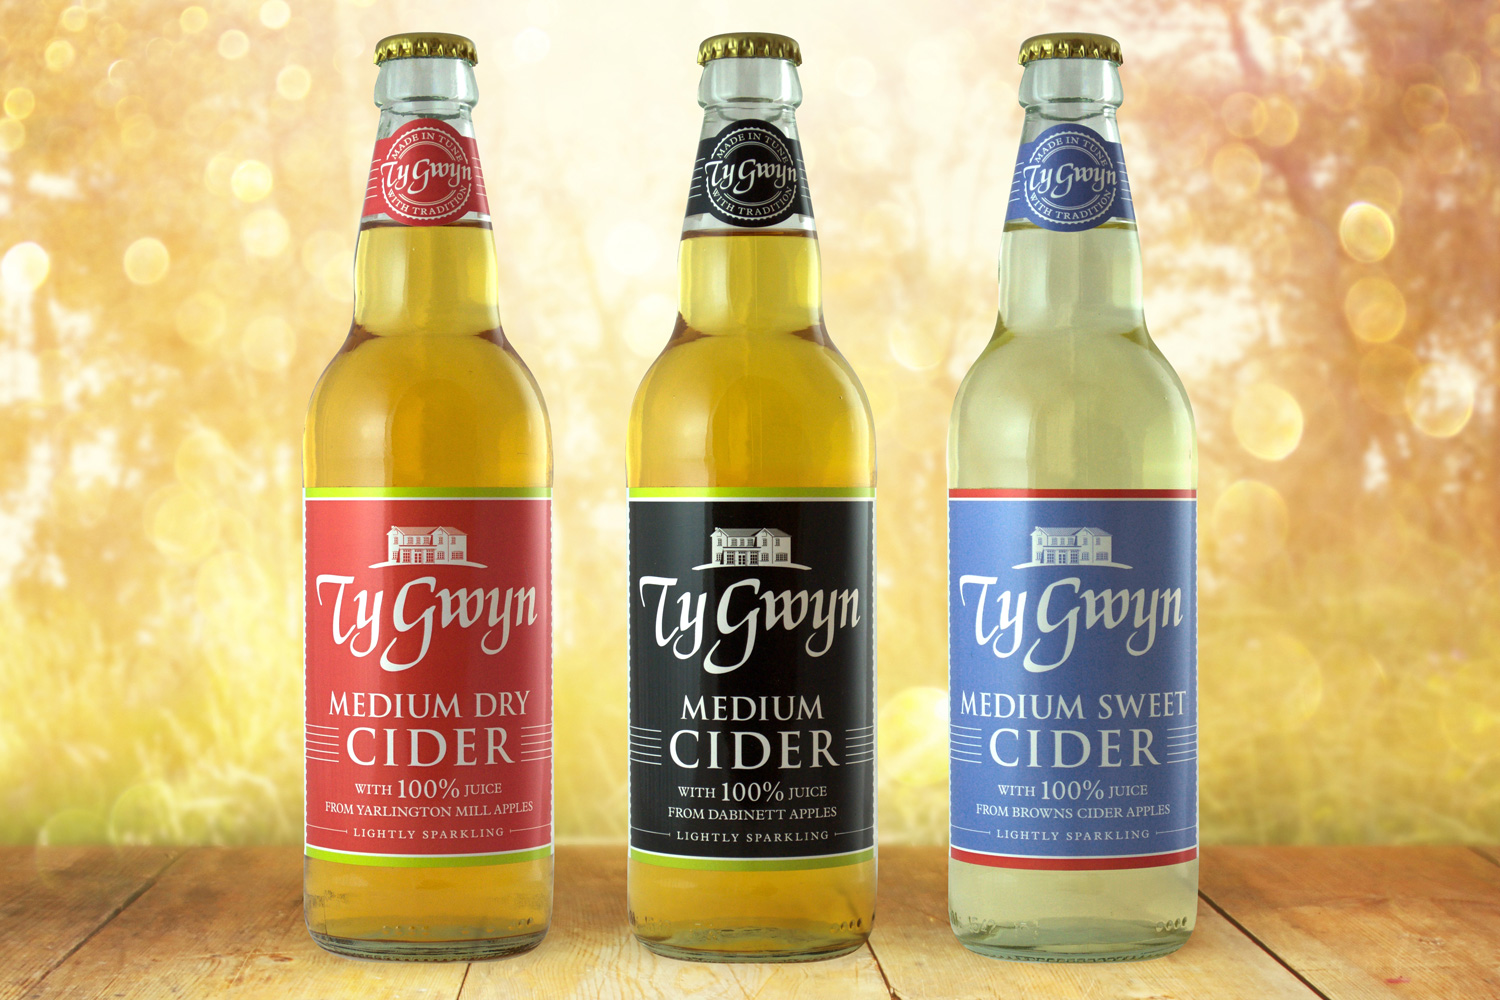 Ty Gwyn Cider bottles